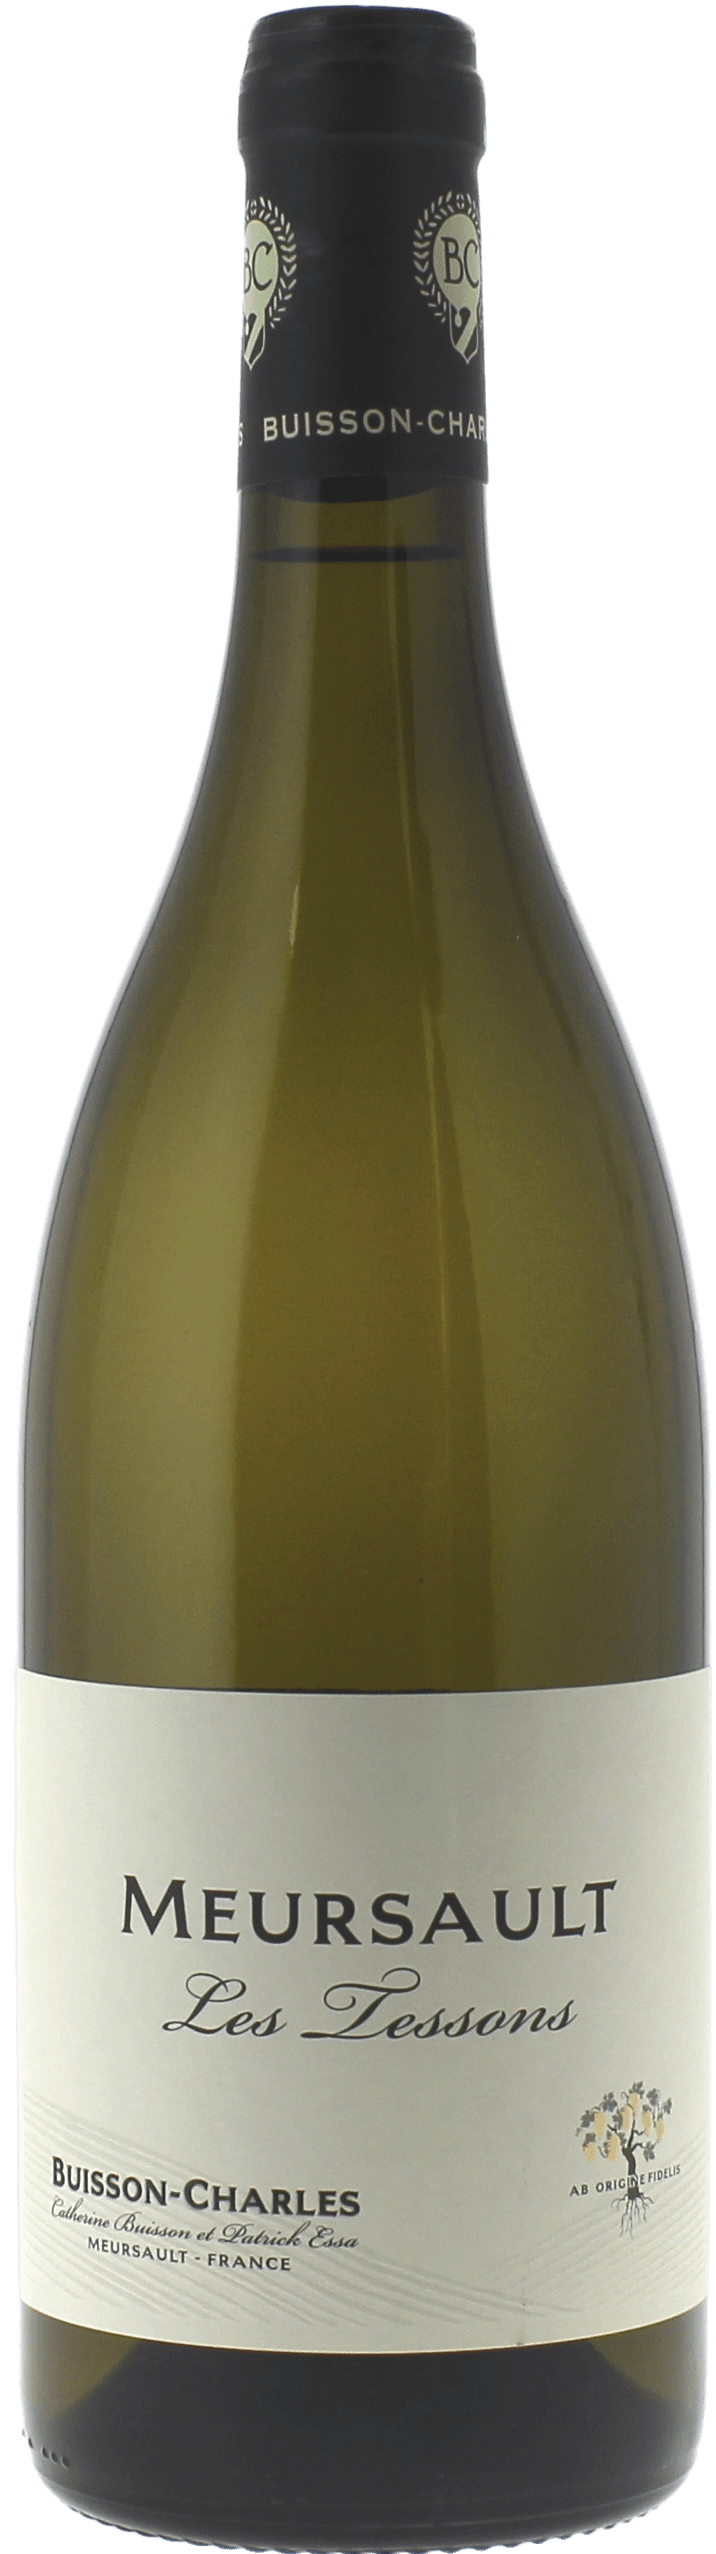 Meursault tessons 2018  BUISSON Charles, Bourgogne blanc